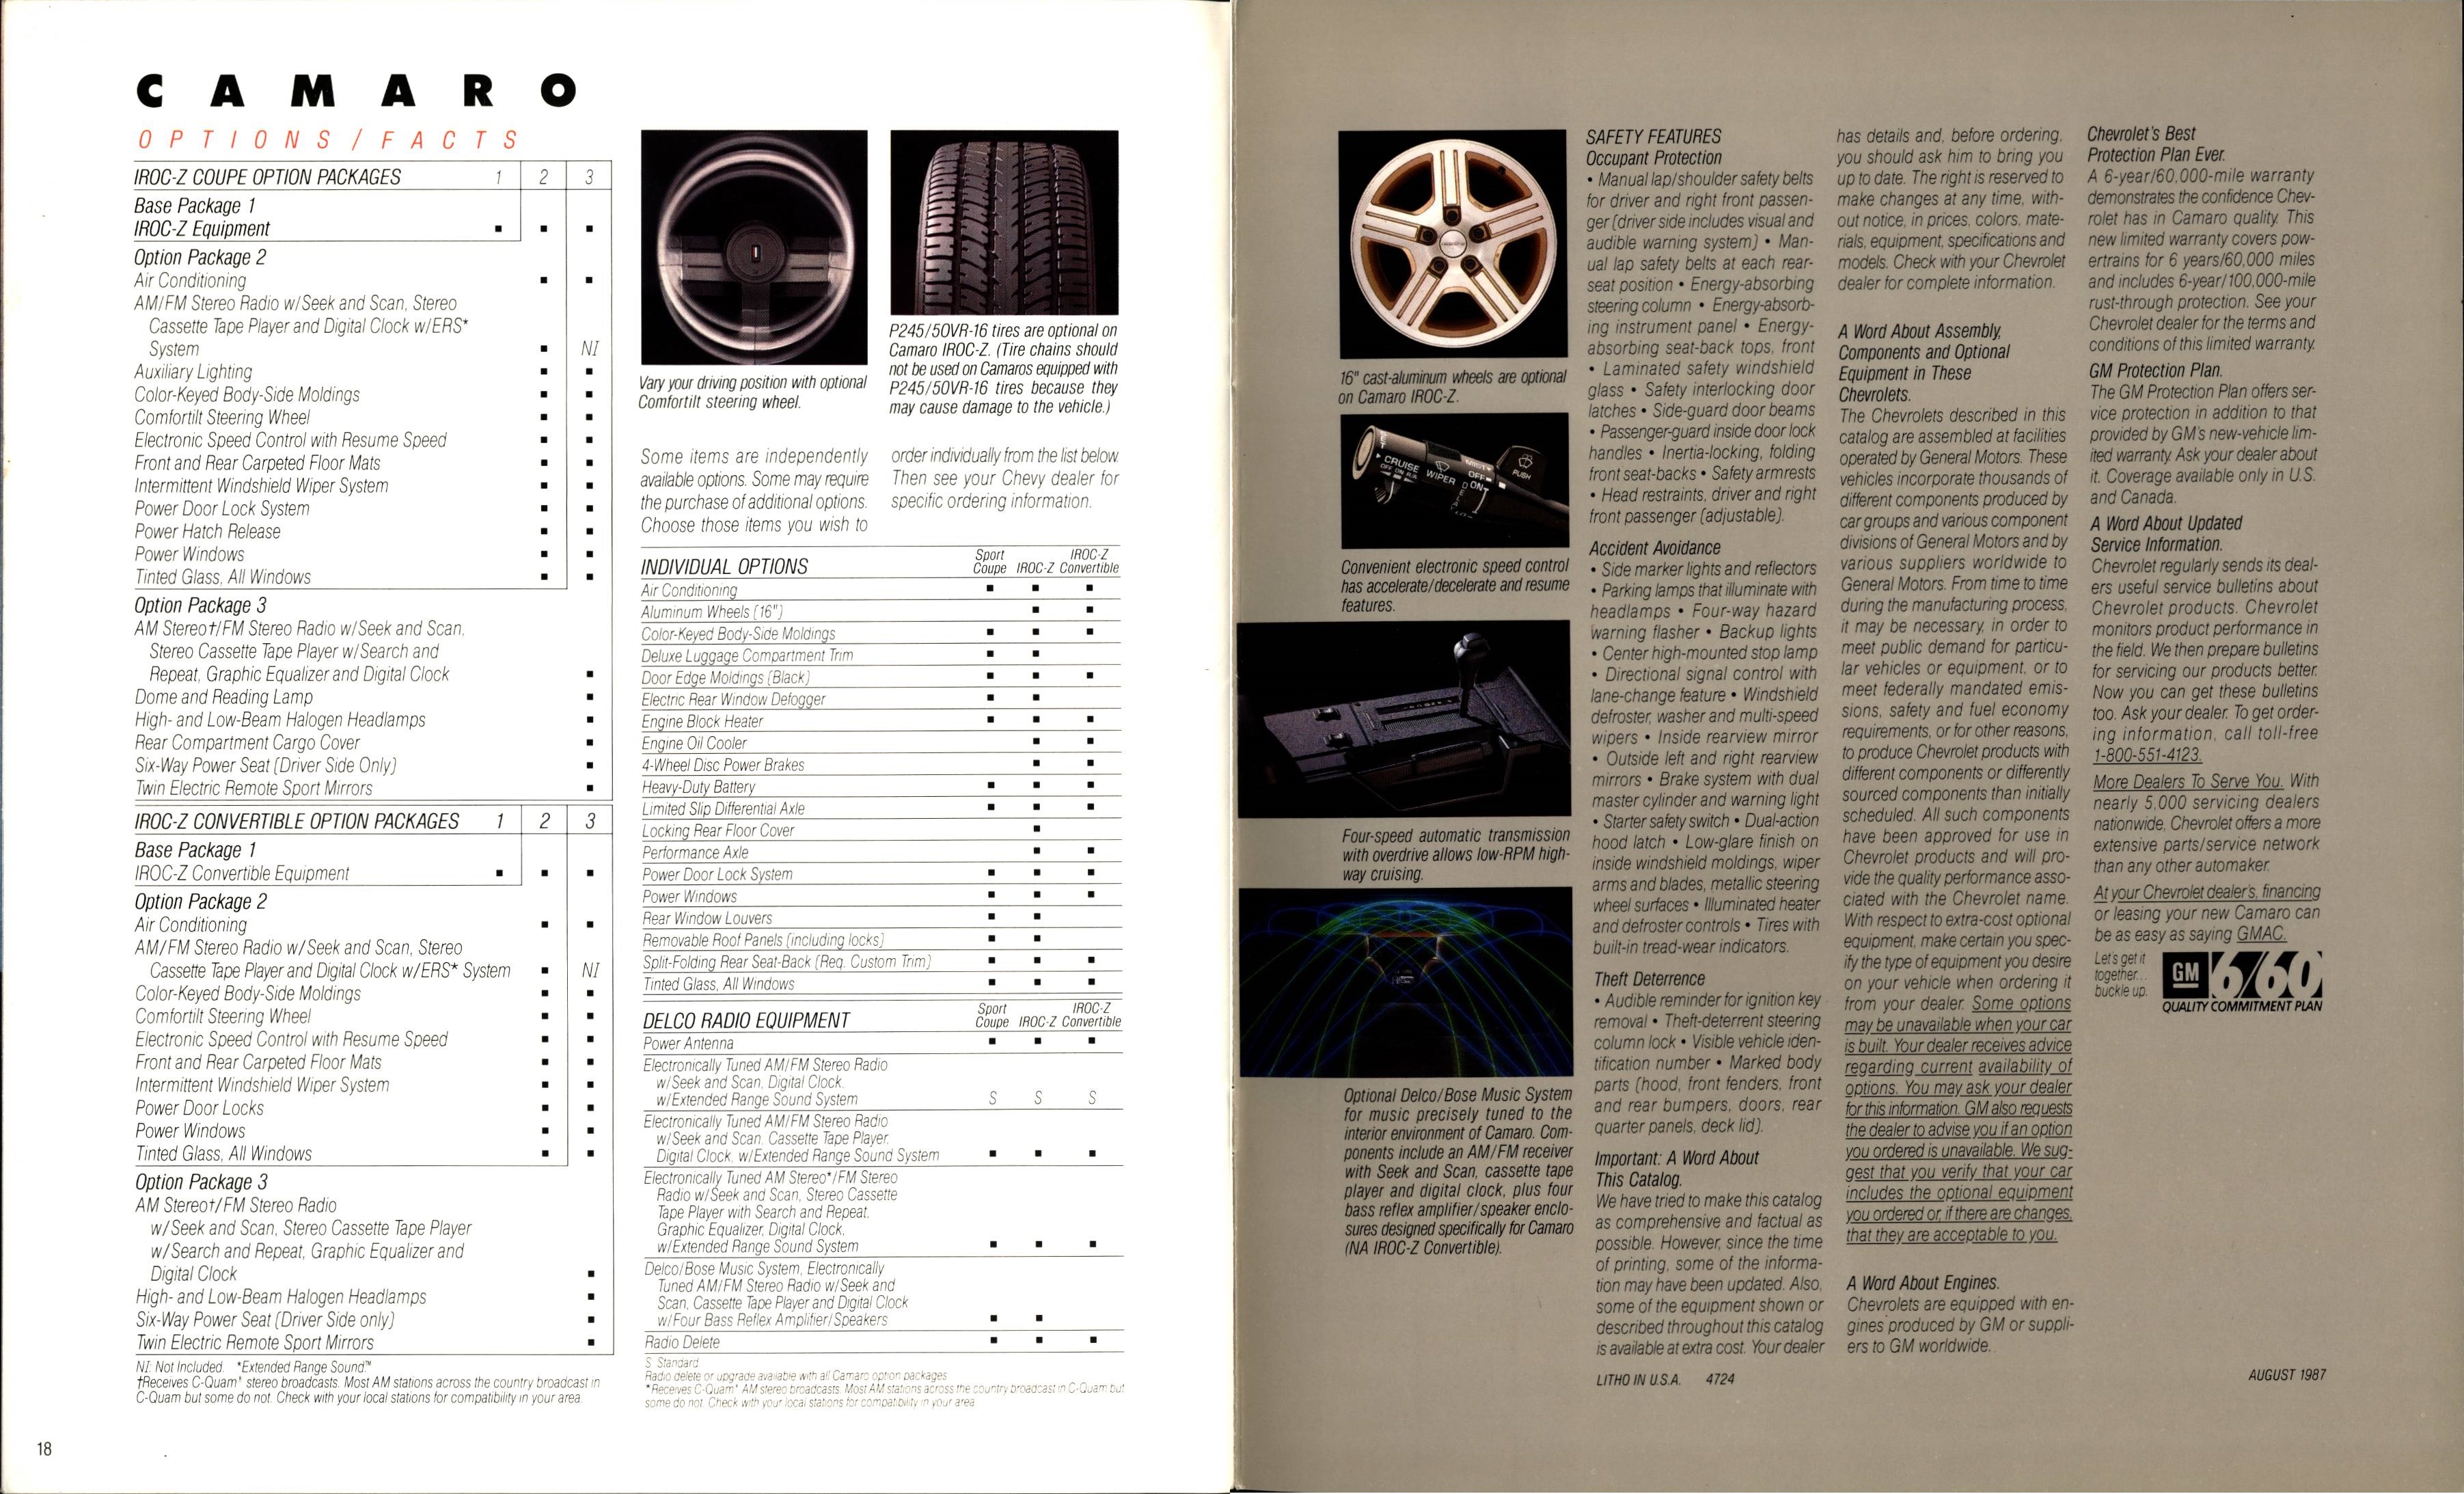 1988 Chevrolet Camaro Brochure 18-19